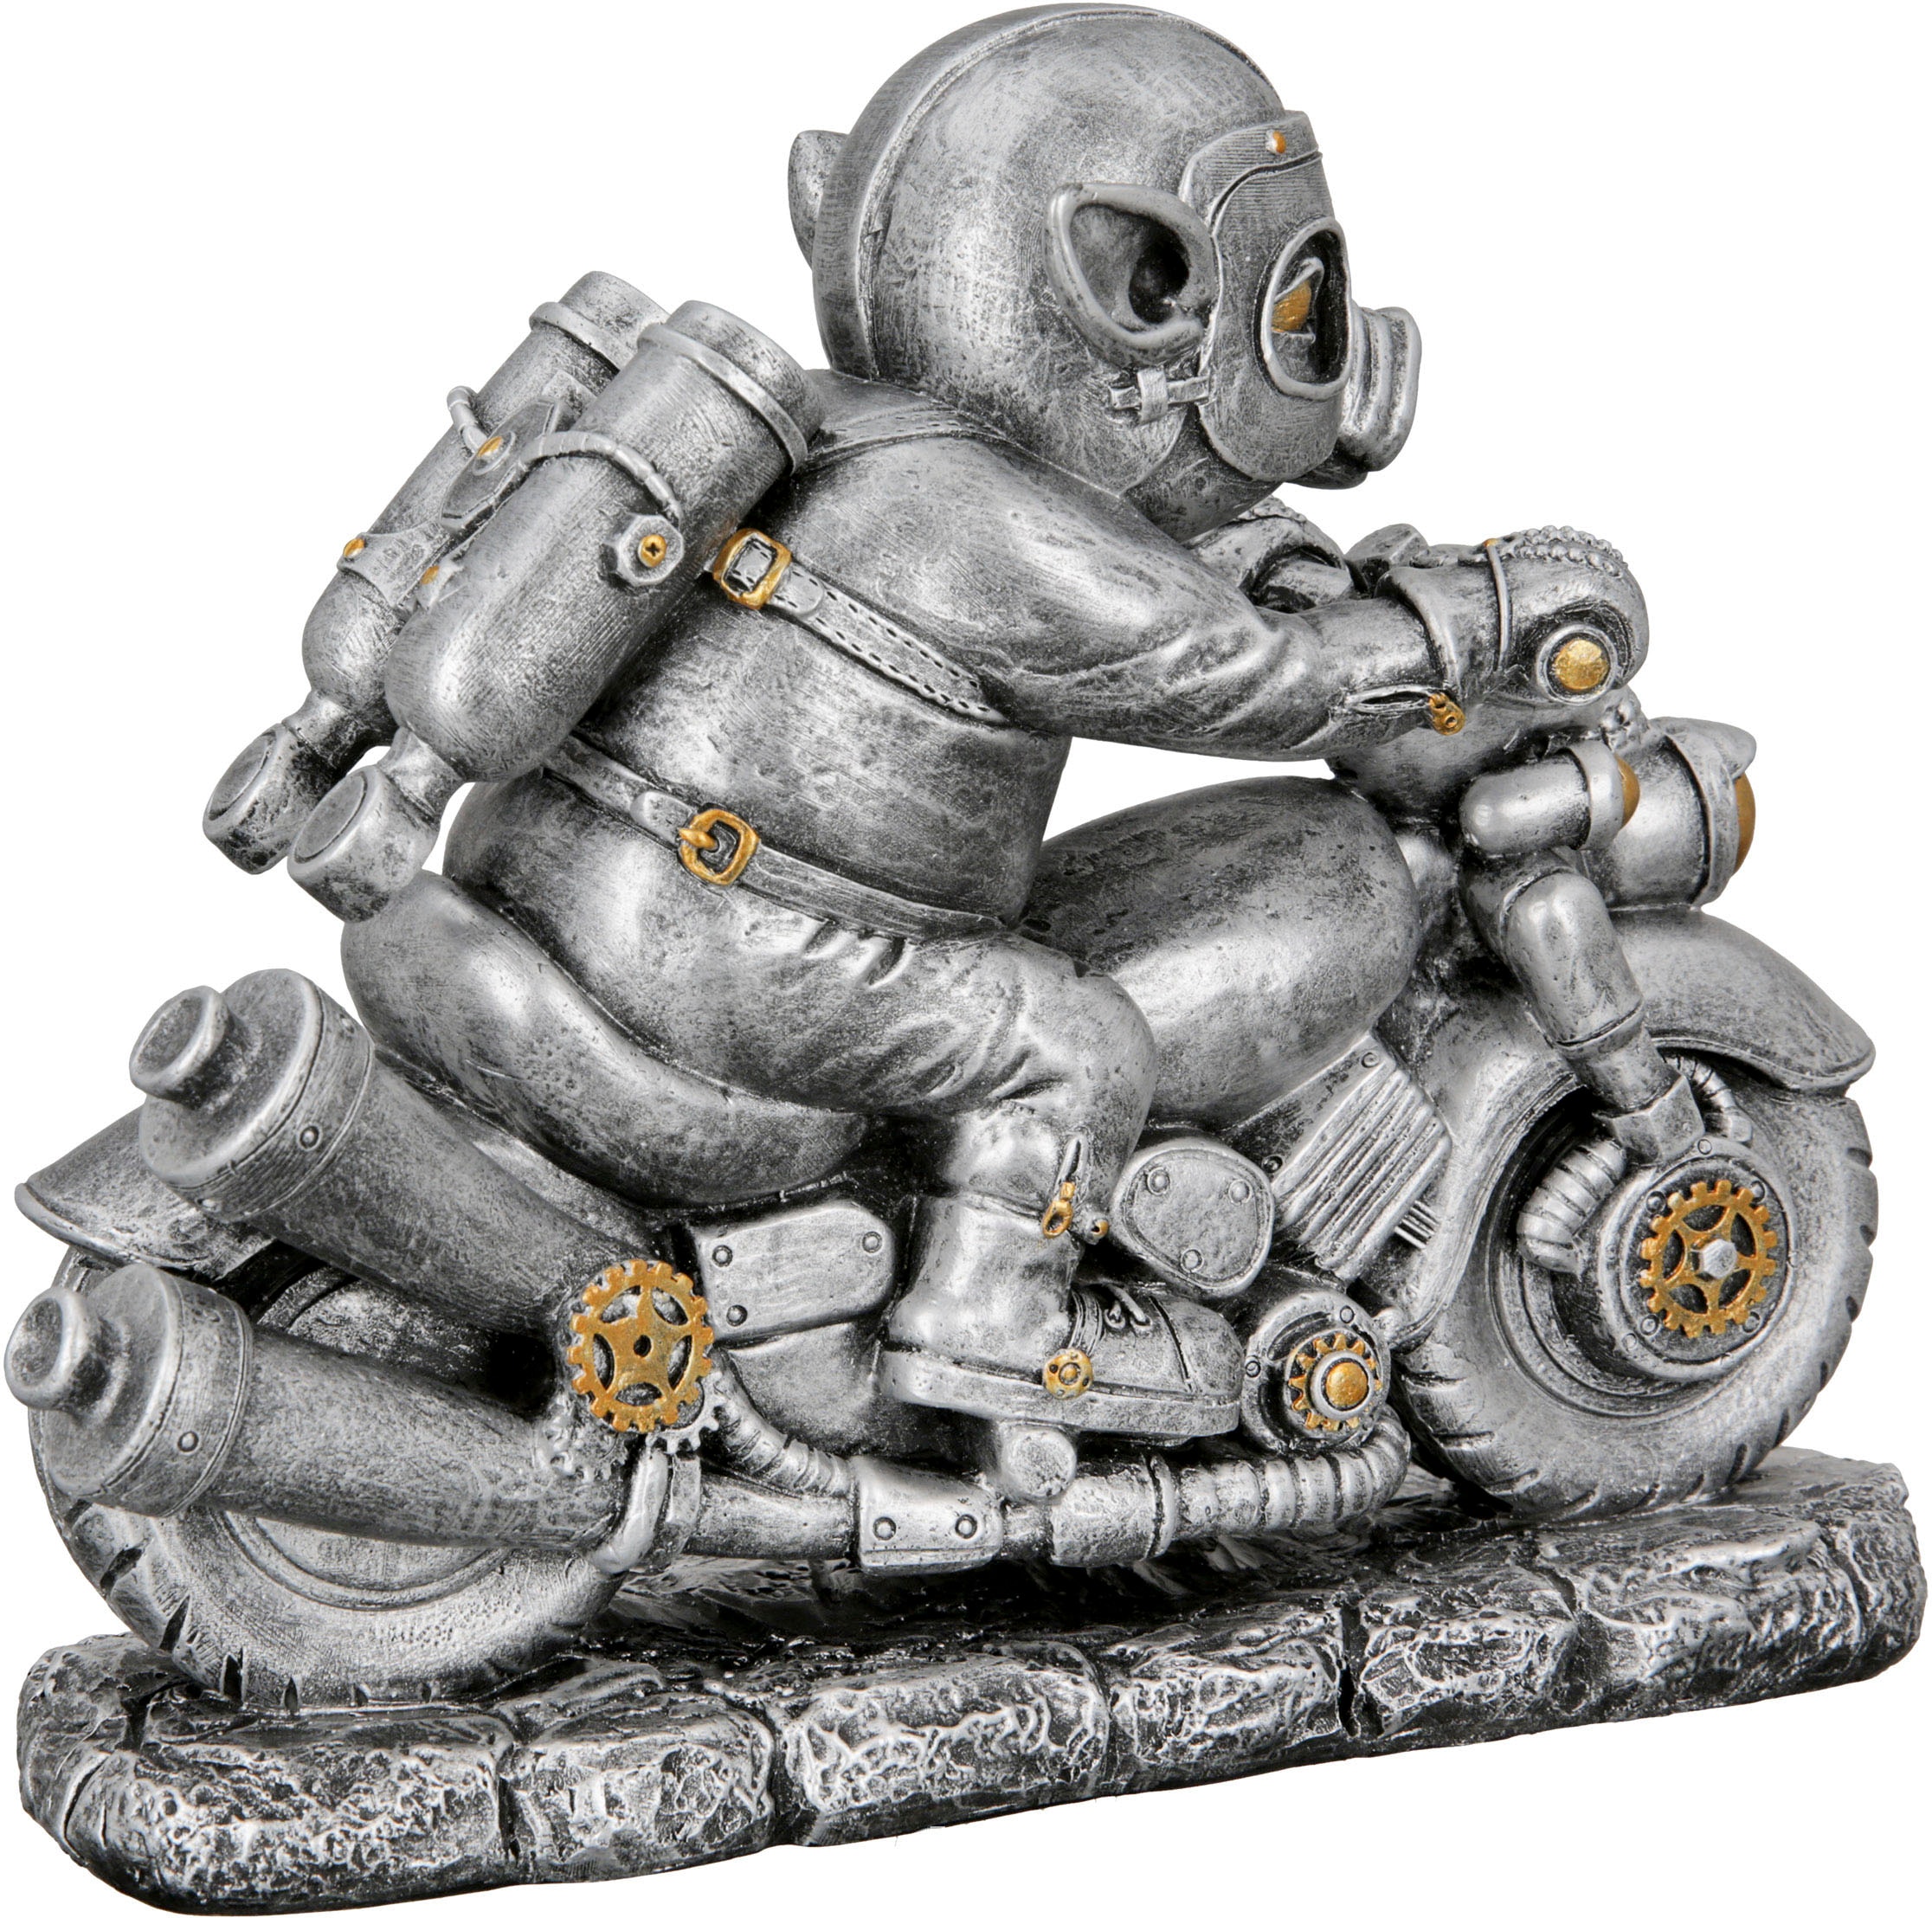 Casablanca by Gilde Tierfigur jetzt kaufen »Skulptur Steampunk Motor-Pig«